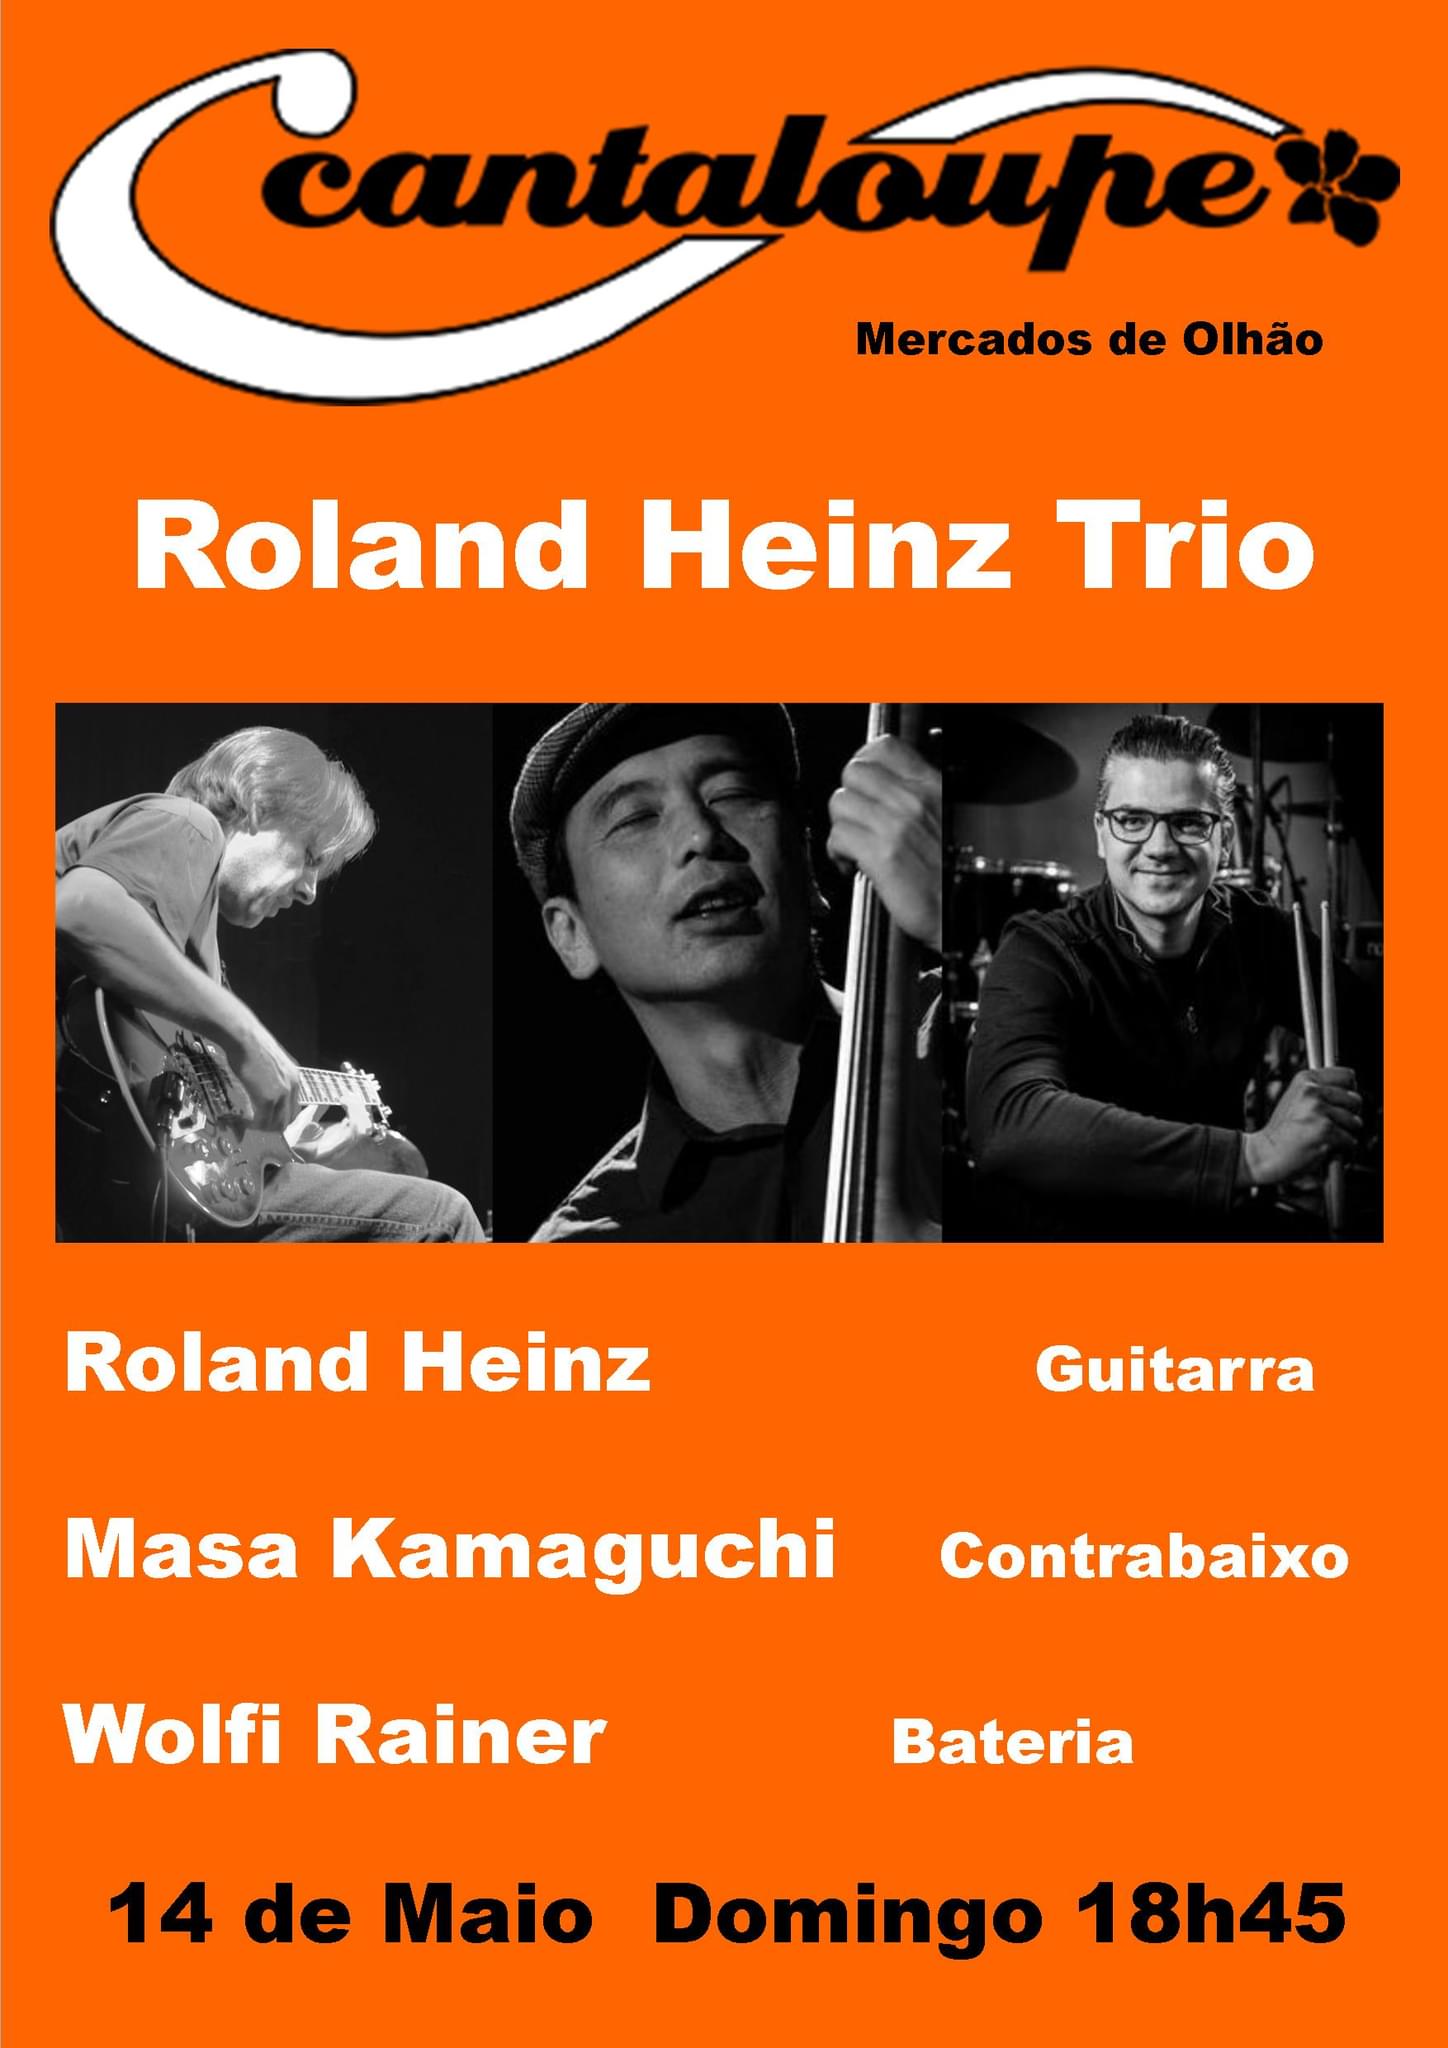 Roland Heinz trio